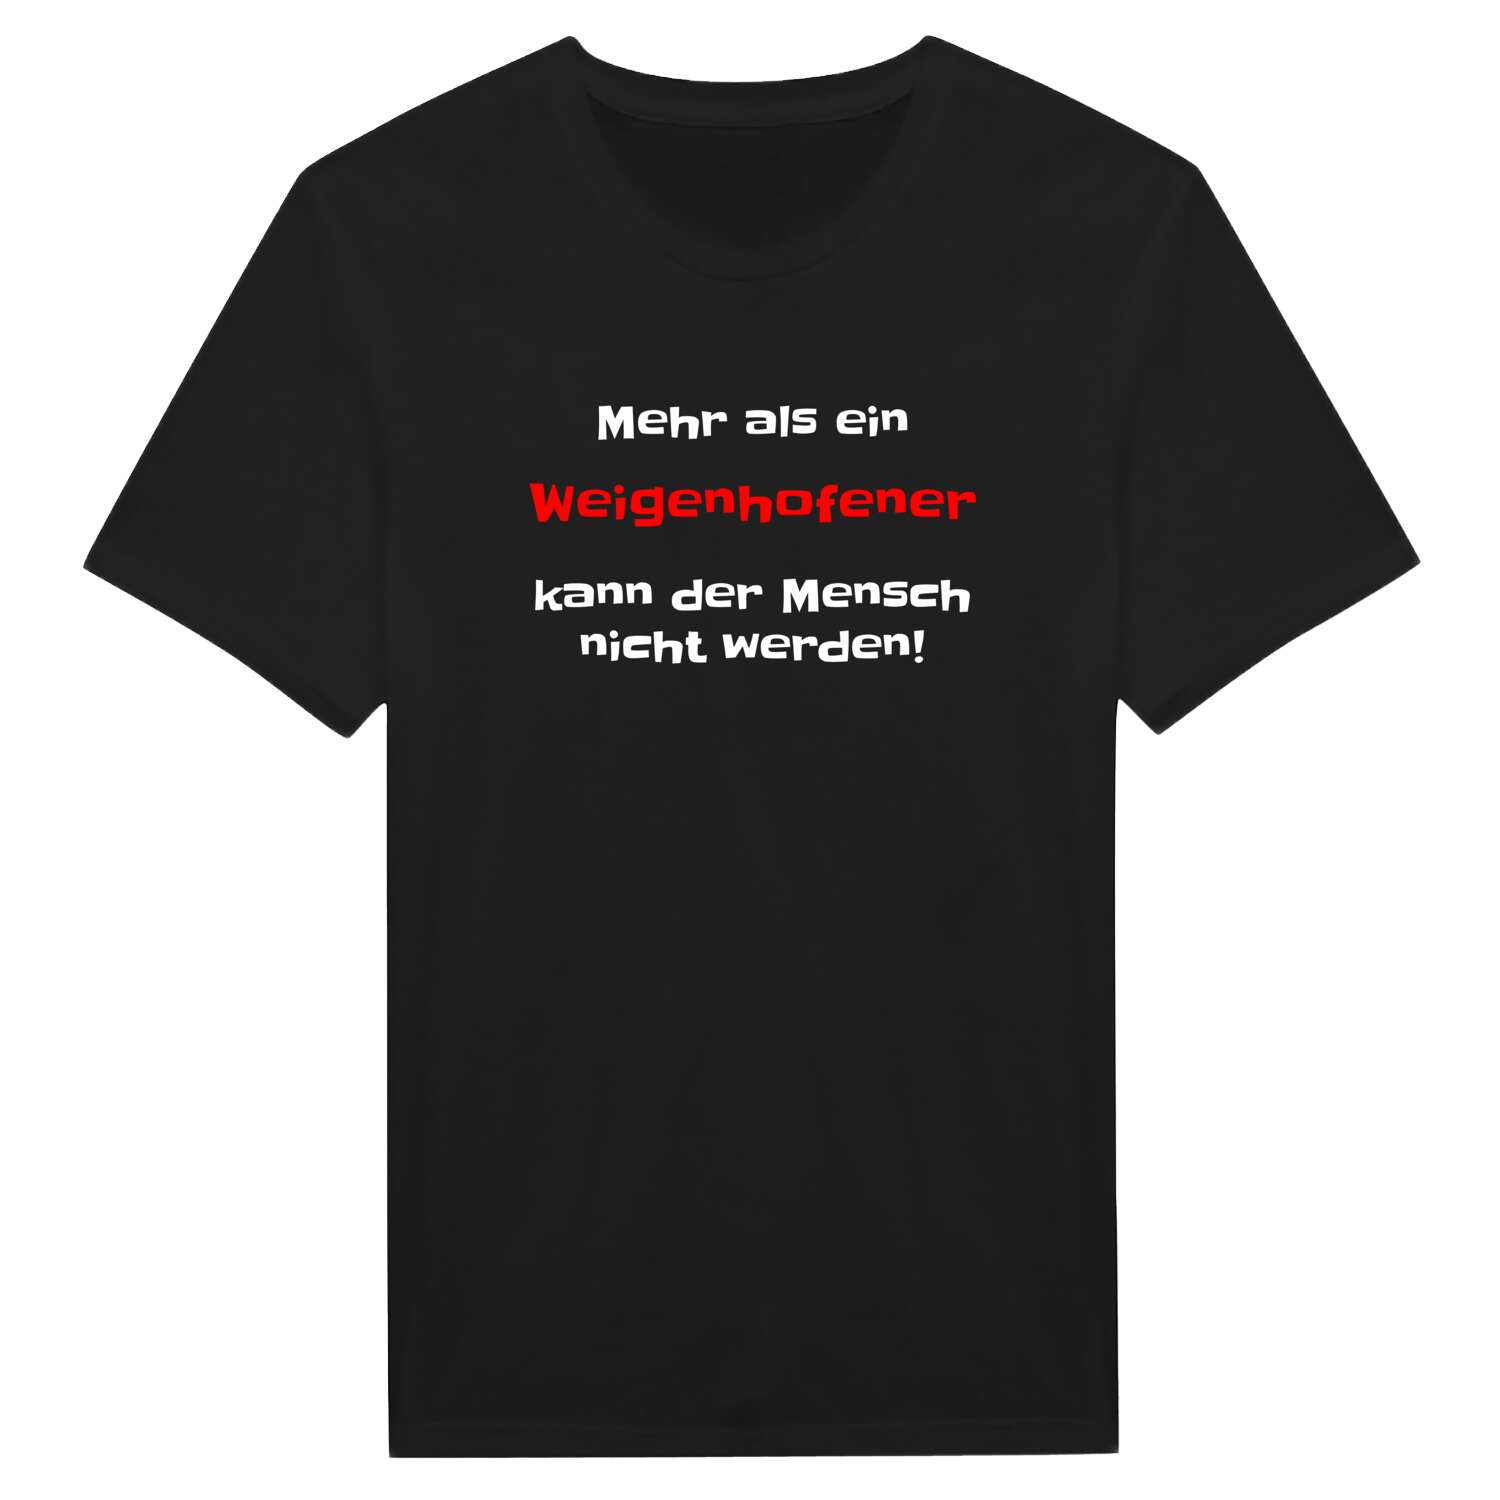 Weigenhofen T-Shirt »Mehr als ein«